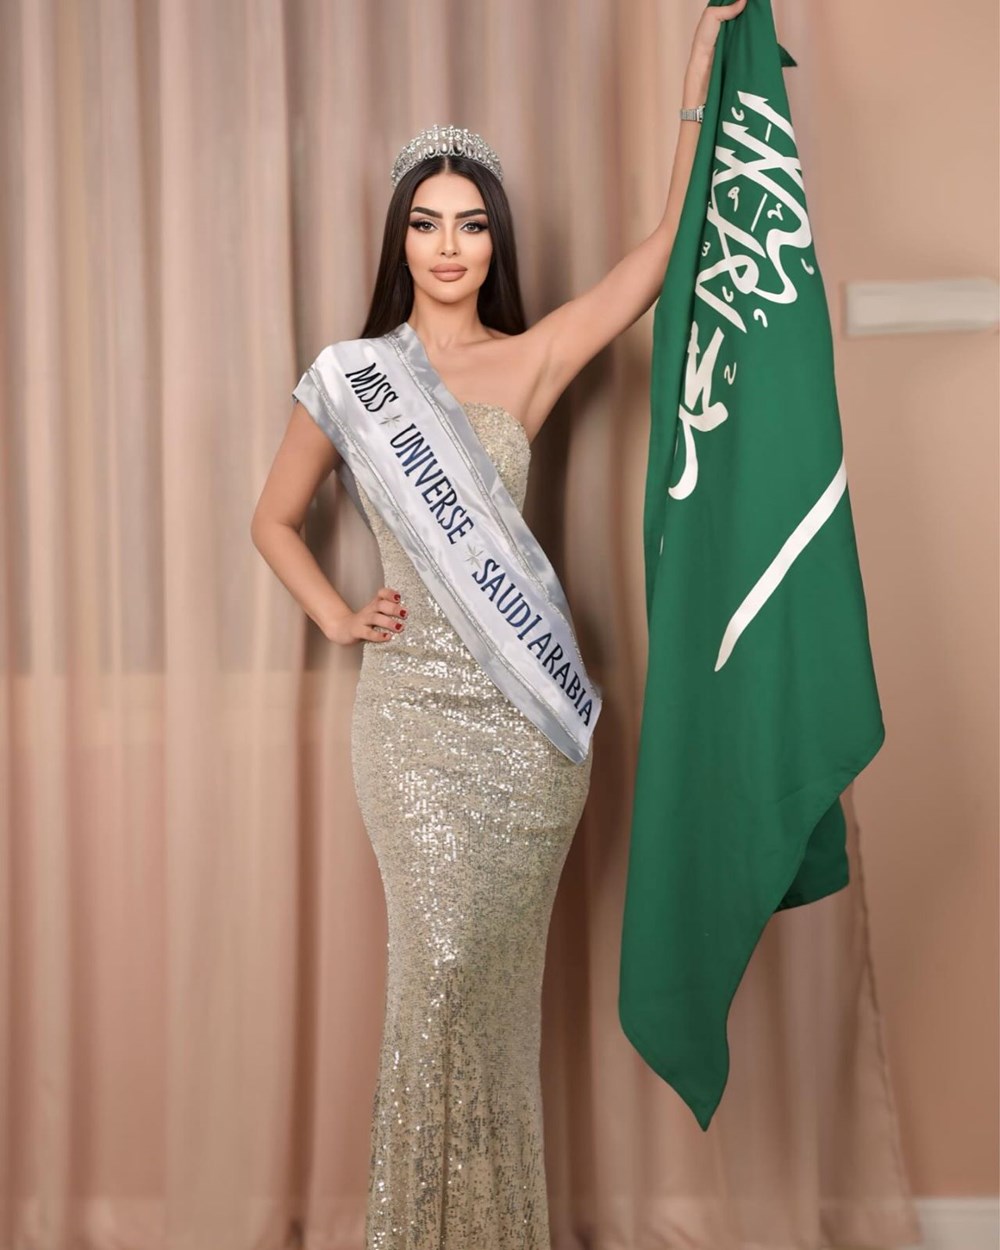 Ülke tarihine geçti! Suudi Arabistanlı model şimdi de Kainat Güzeli olmak için yarışacak - 6